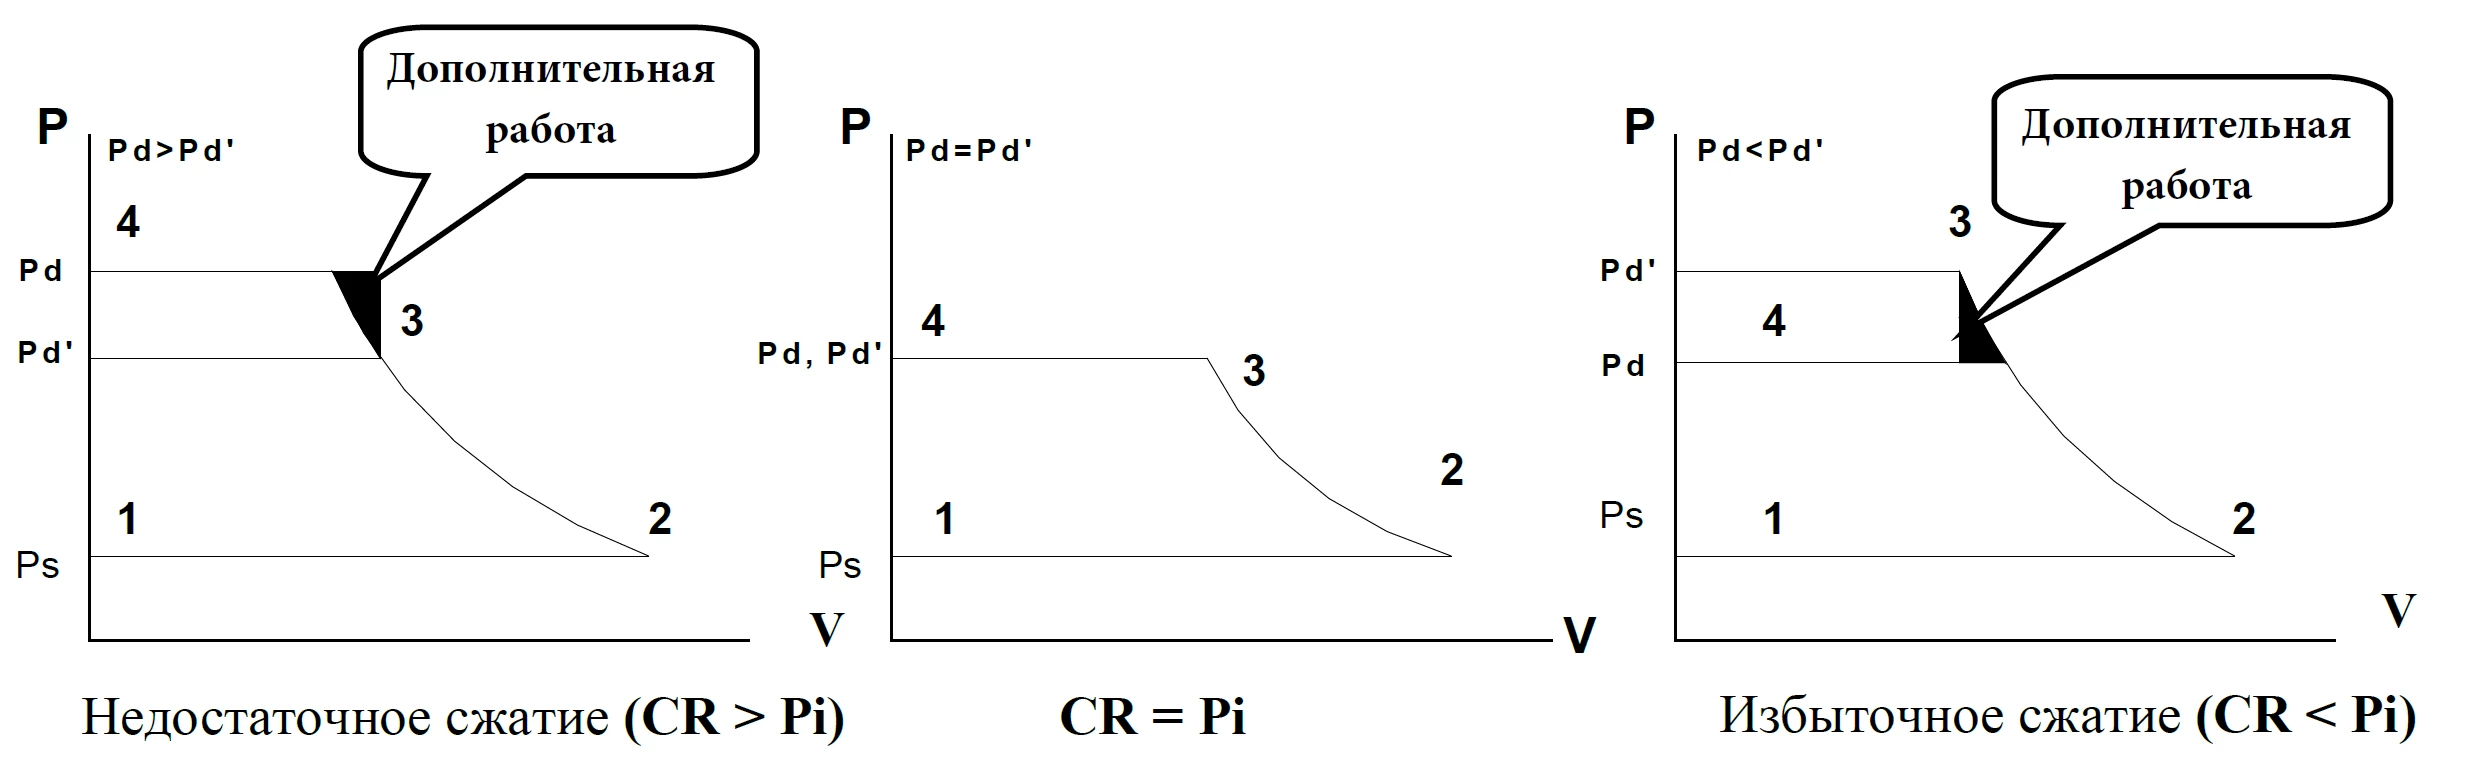 Избыточное (CR < Pi) и недостаточное сжатие (CR > Pi)